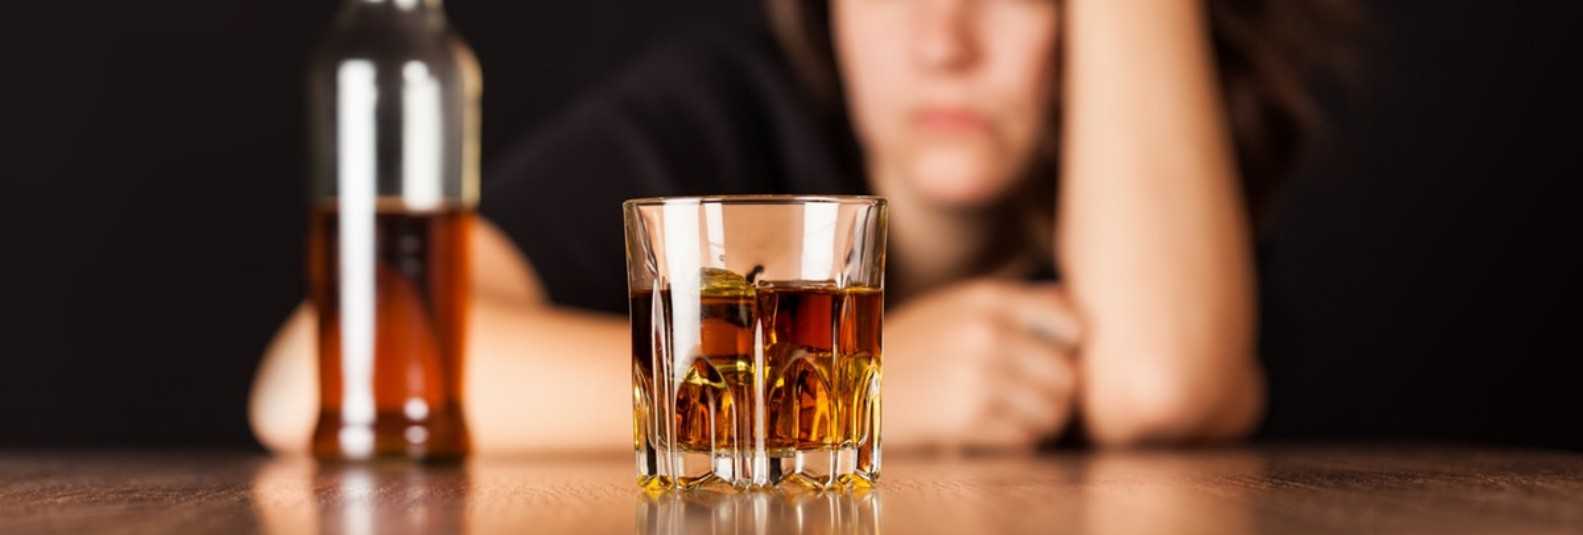 После алкоголя страх и тревога: как избавиться от чувства беспокойства, что делать, если состояние нестабильно после употребления спиртного | suhoy.guru